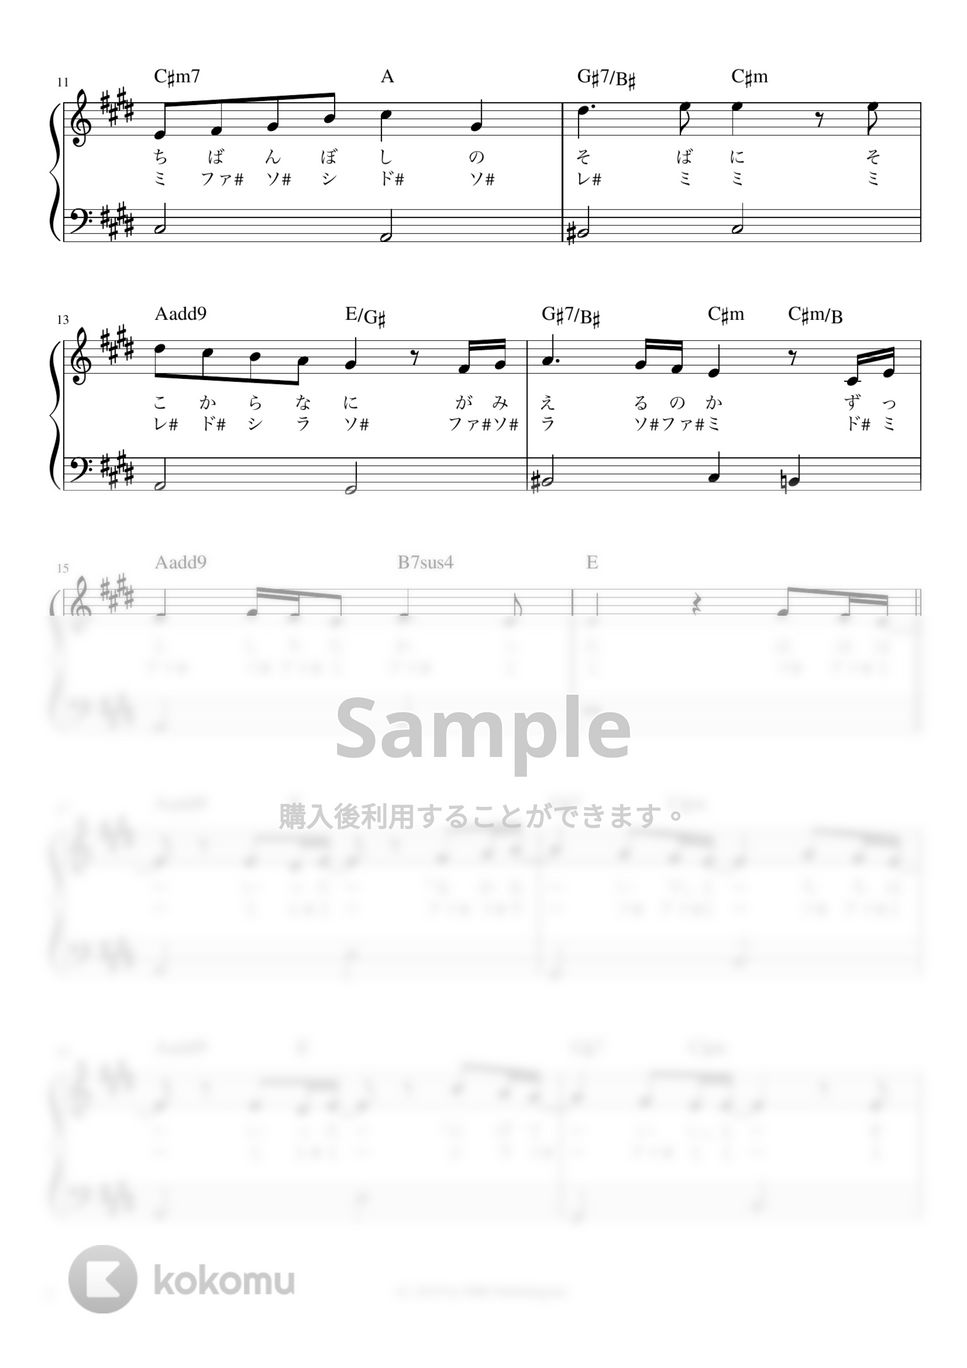 嵐 - カイト (かんたん 歌詞付き ドレミ付き 初心者) by piano.tokyo